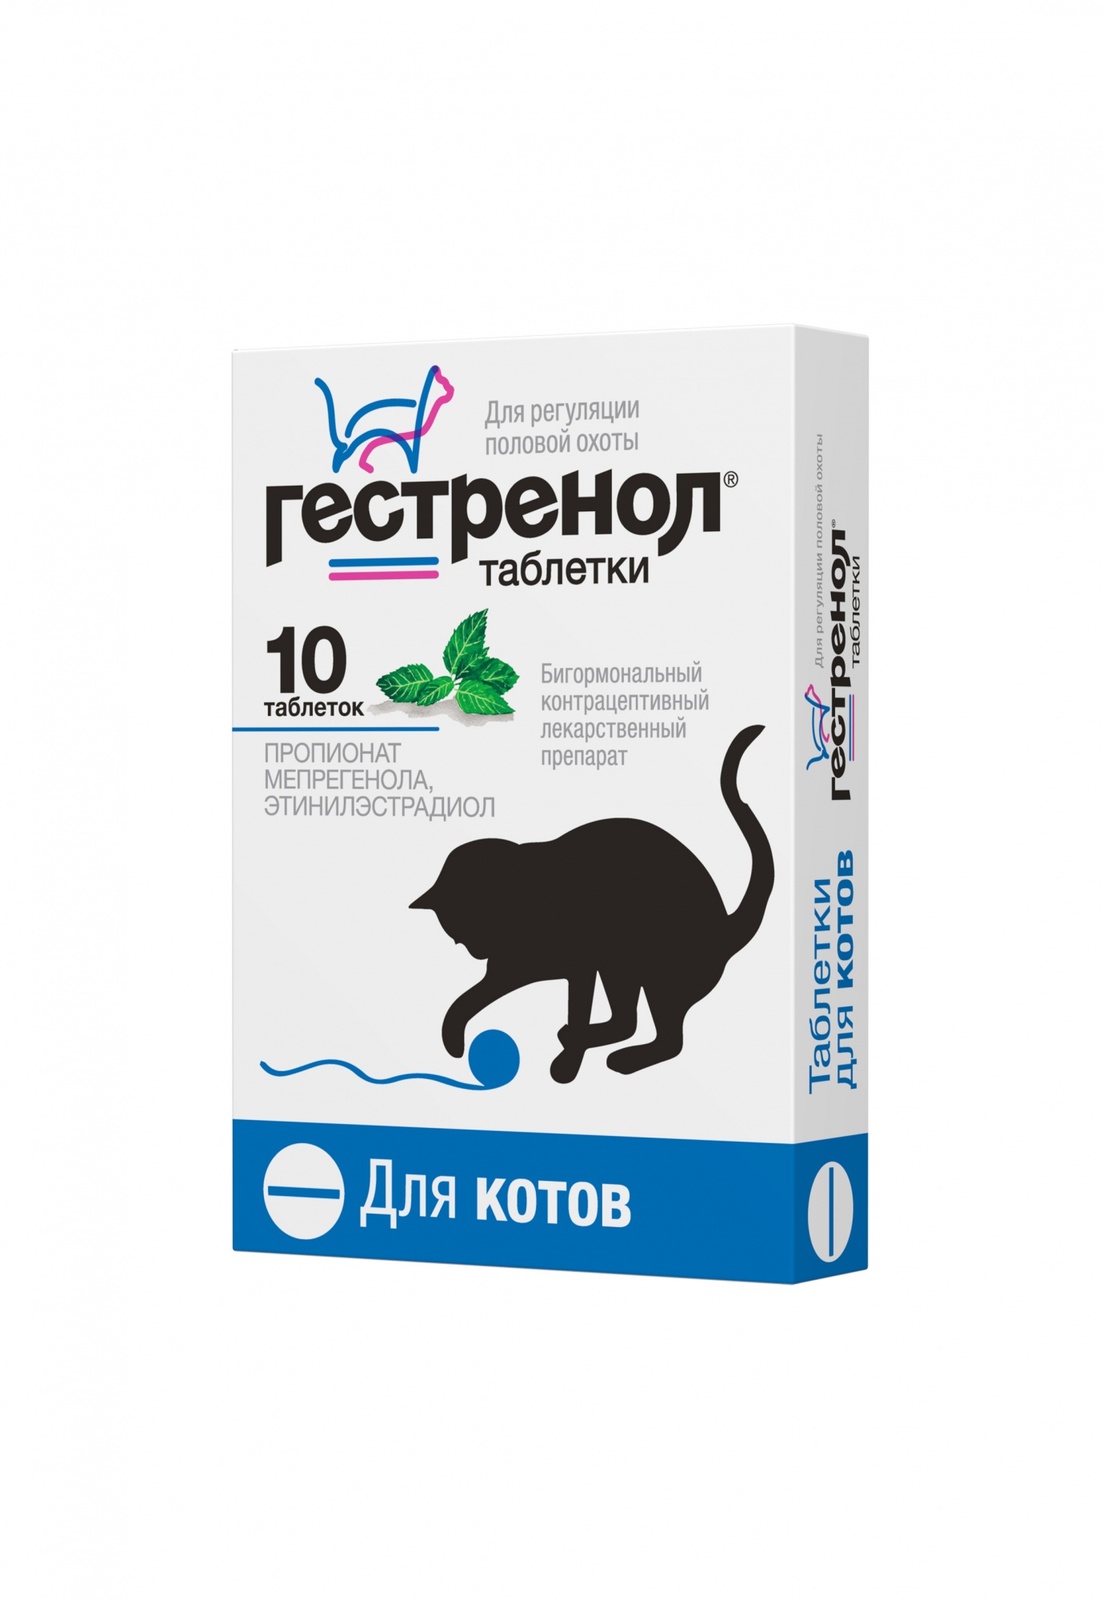 Астрафарм Астрафарм гестренол таблетки для котов для регуляции половой охоты, 10 таб. (7 г) гестренол таблетки для котов вет 10 шт